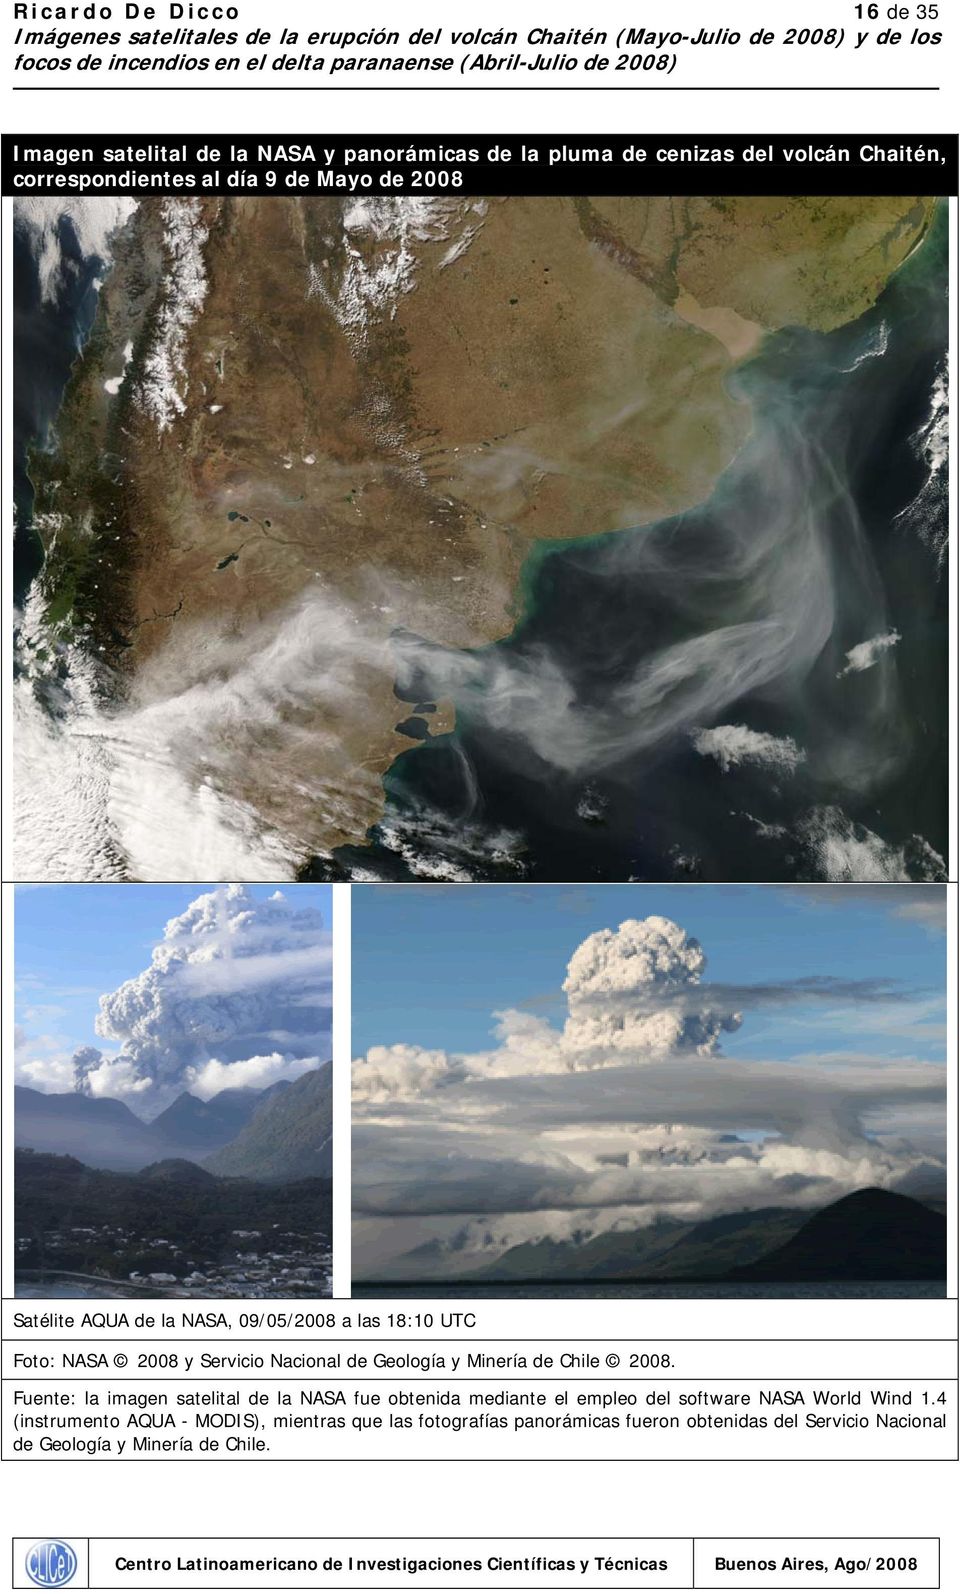 Chile 2008. Fuente: la imagen satelital de la NASA fue obtenida mediante el empleo del software NASA World Wind 1.